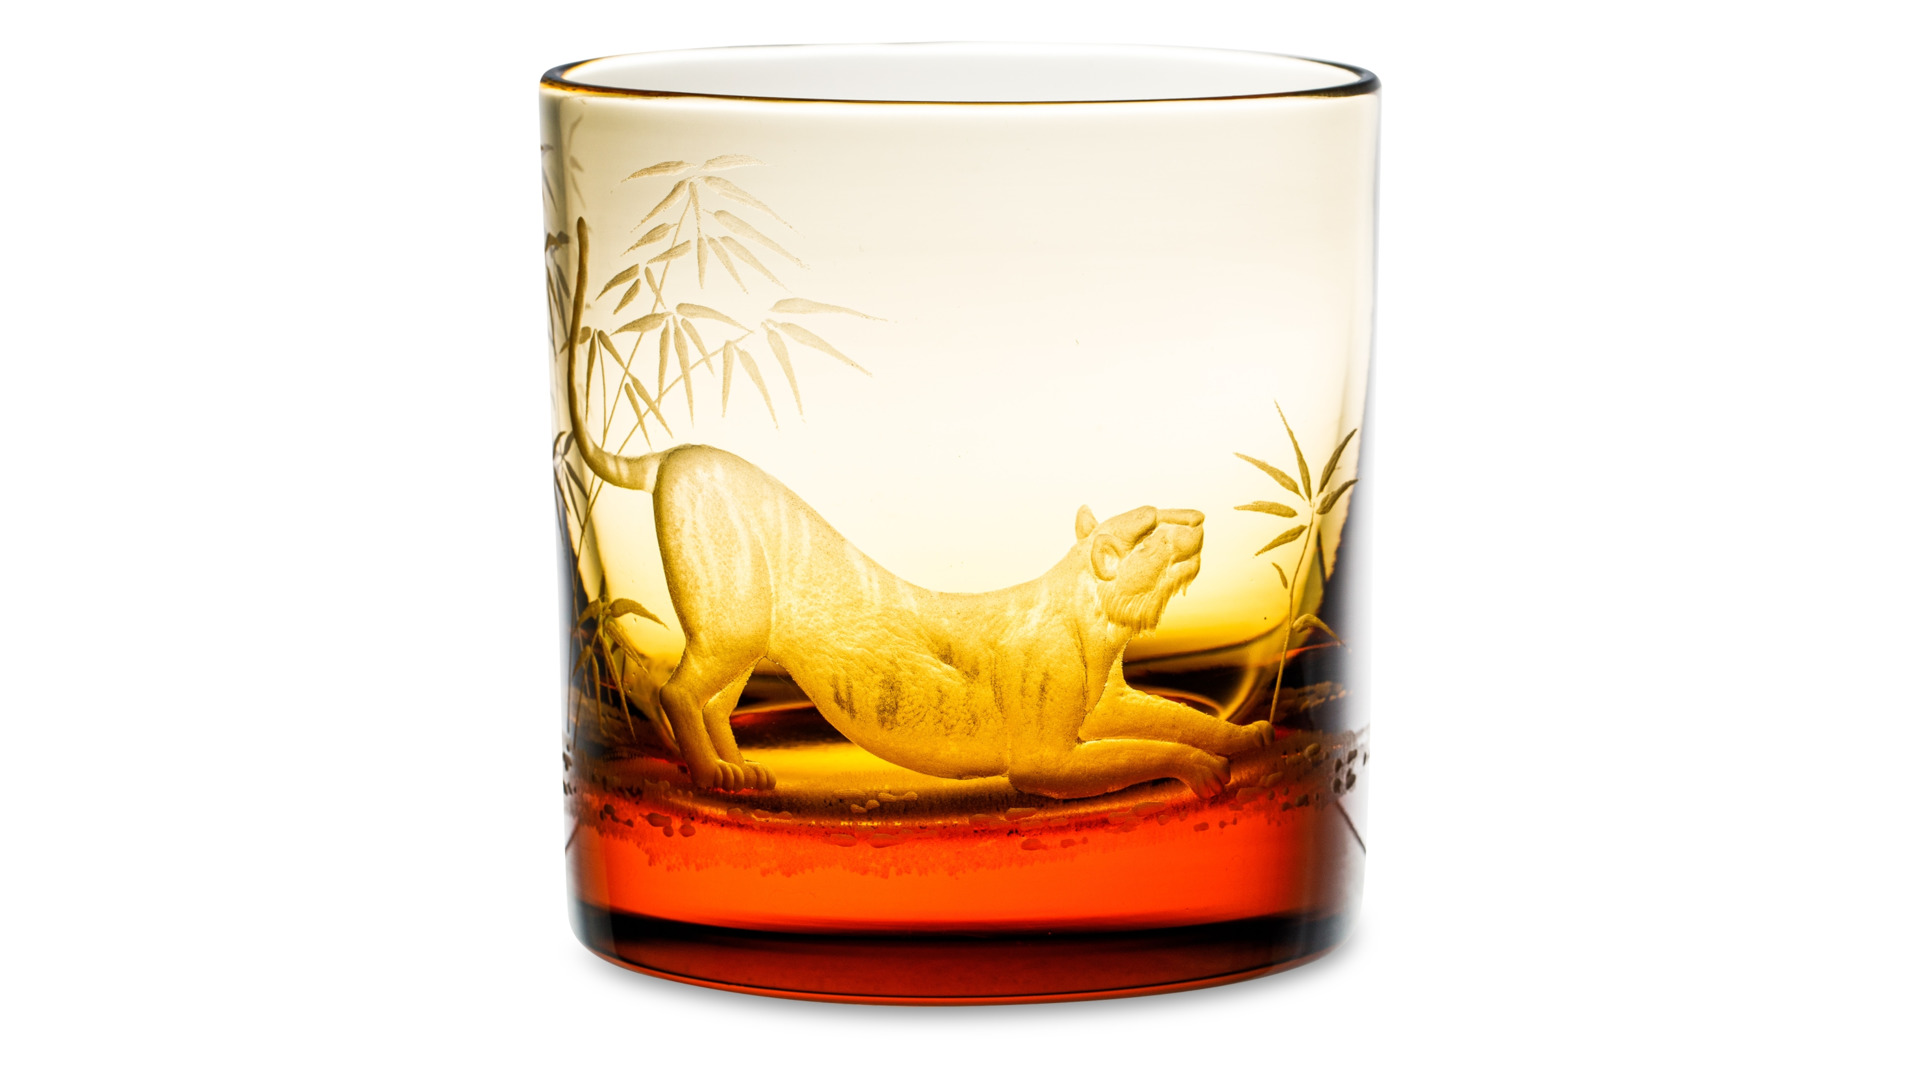 Набор стаканов для виски ГХЗ Тигры 350 мл, 6 шт, хрусталь, янтарный